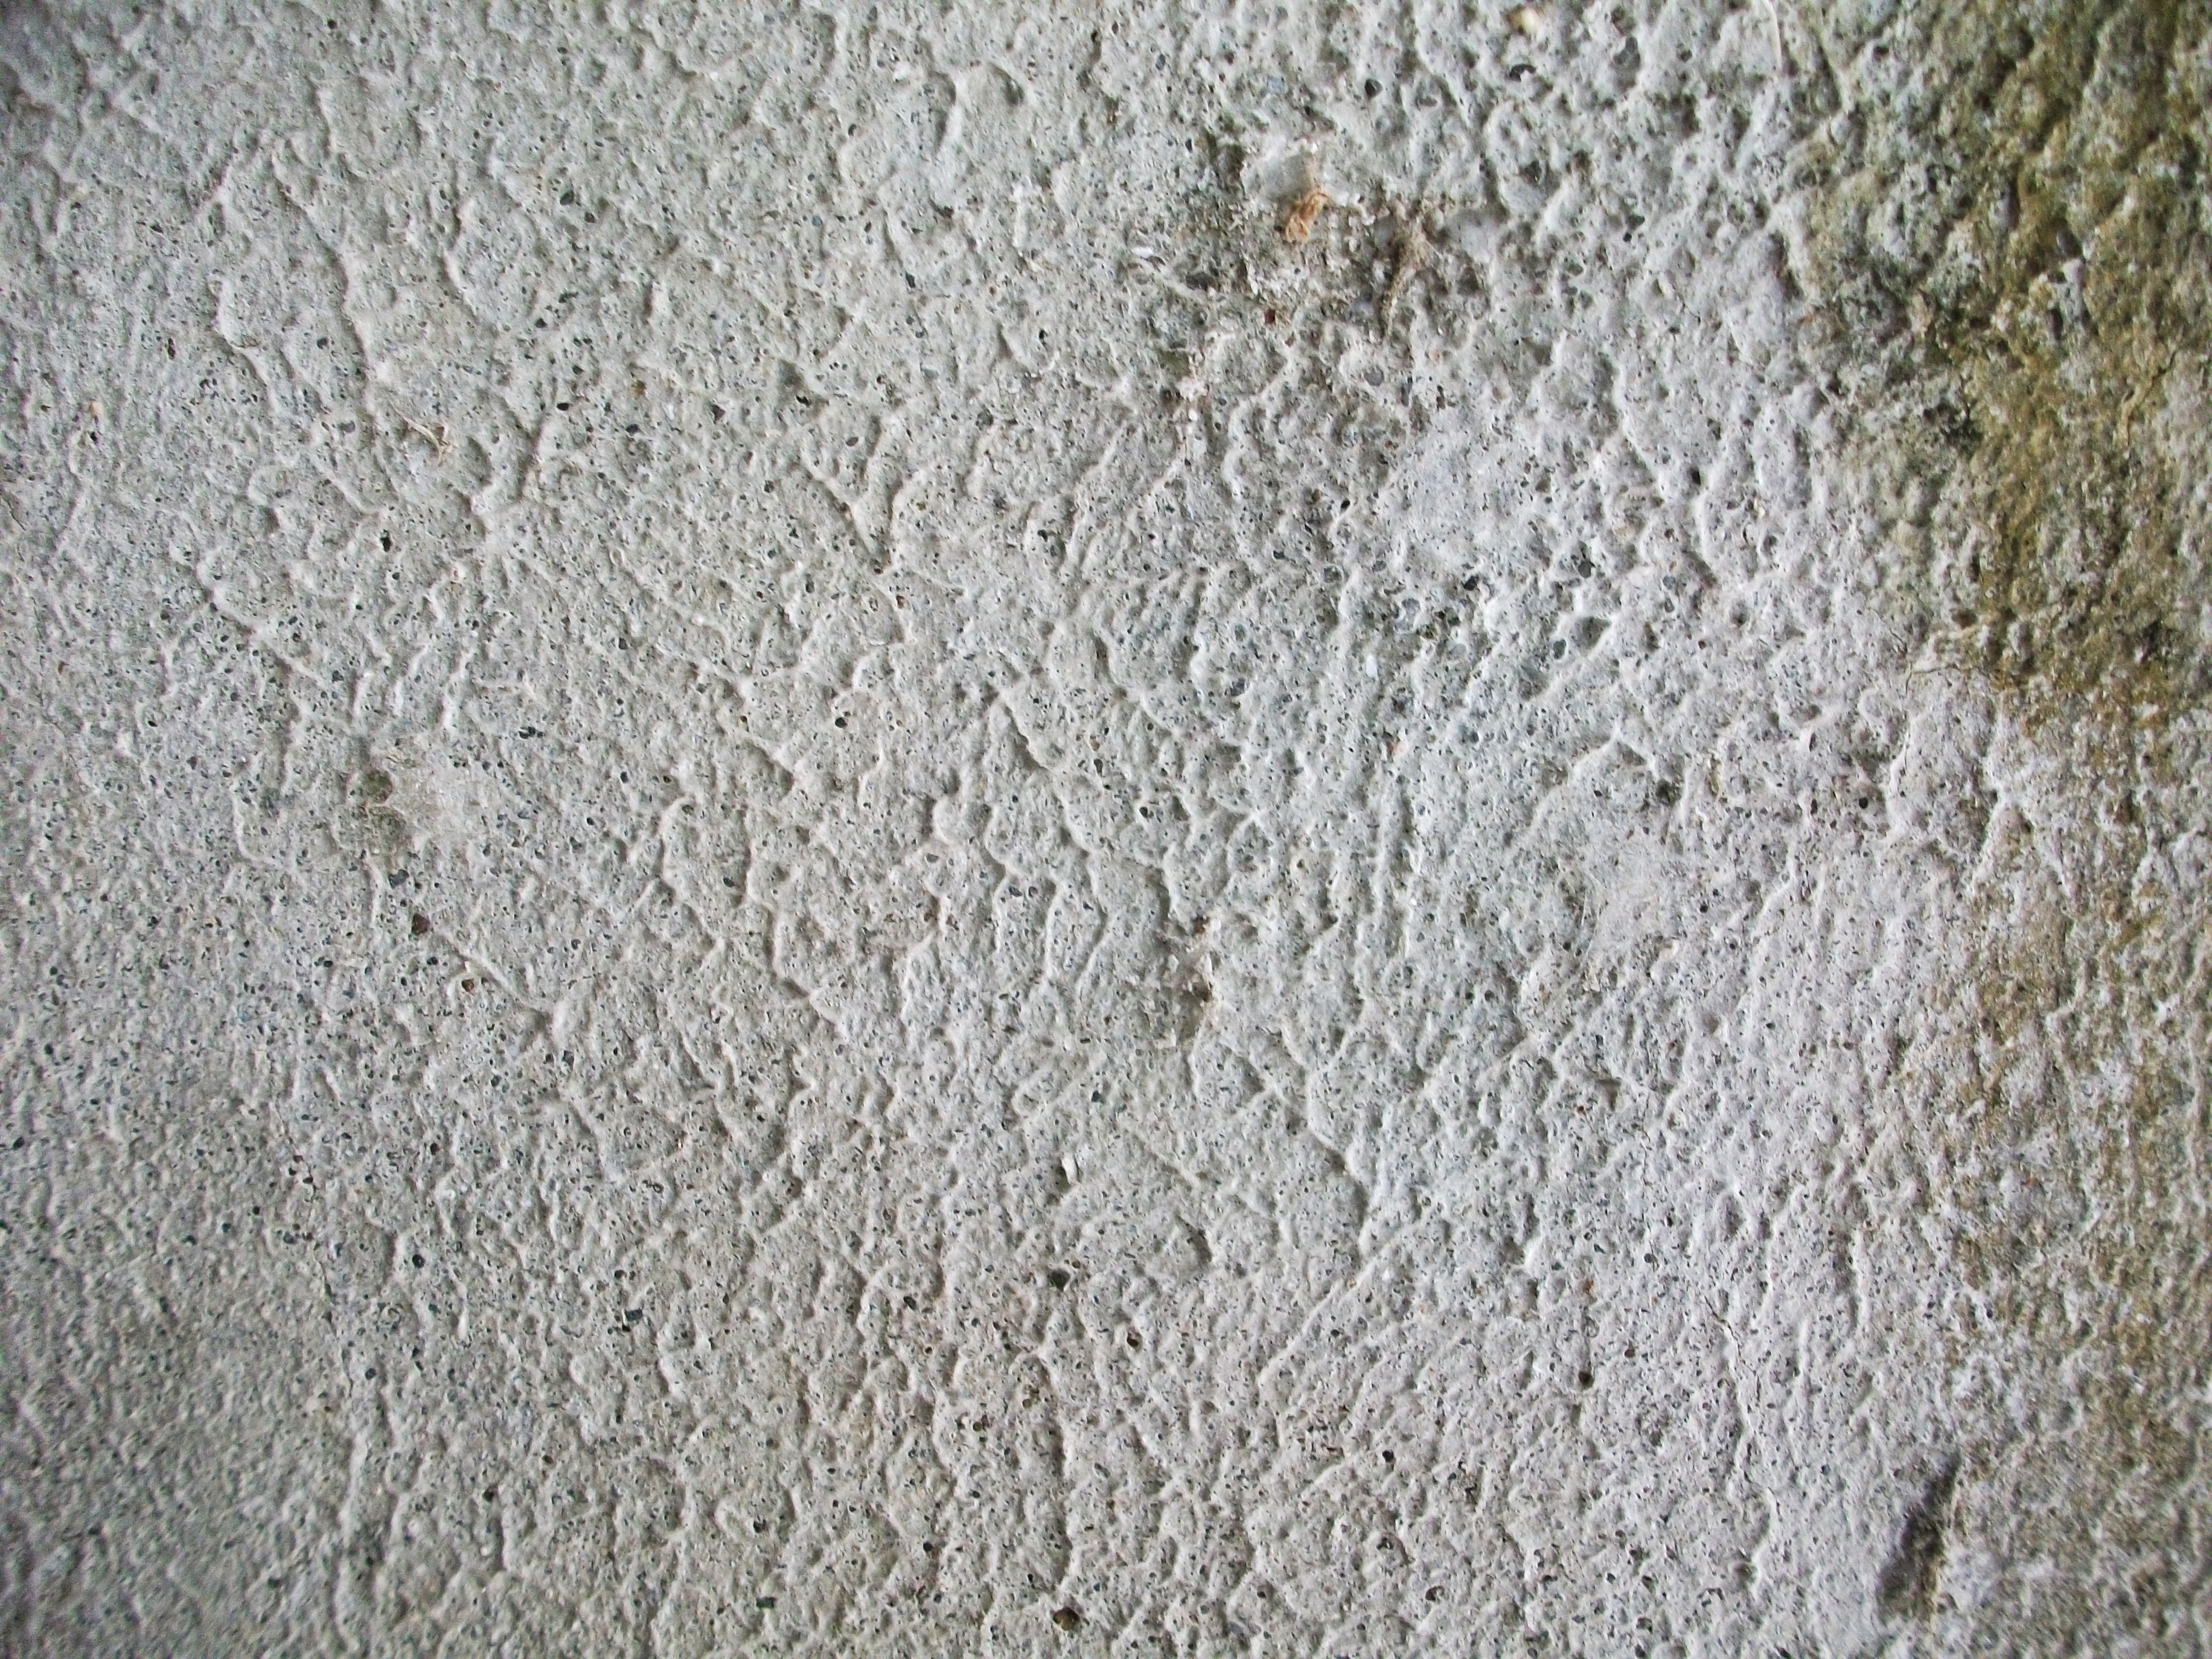 Grunge wall textures - Texture Taddka | Texture Taddka